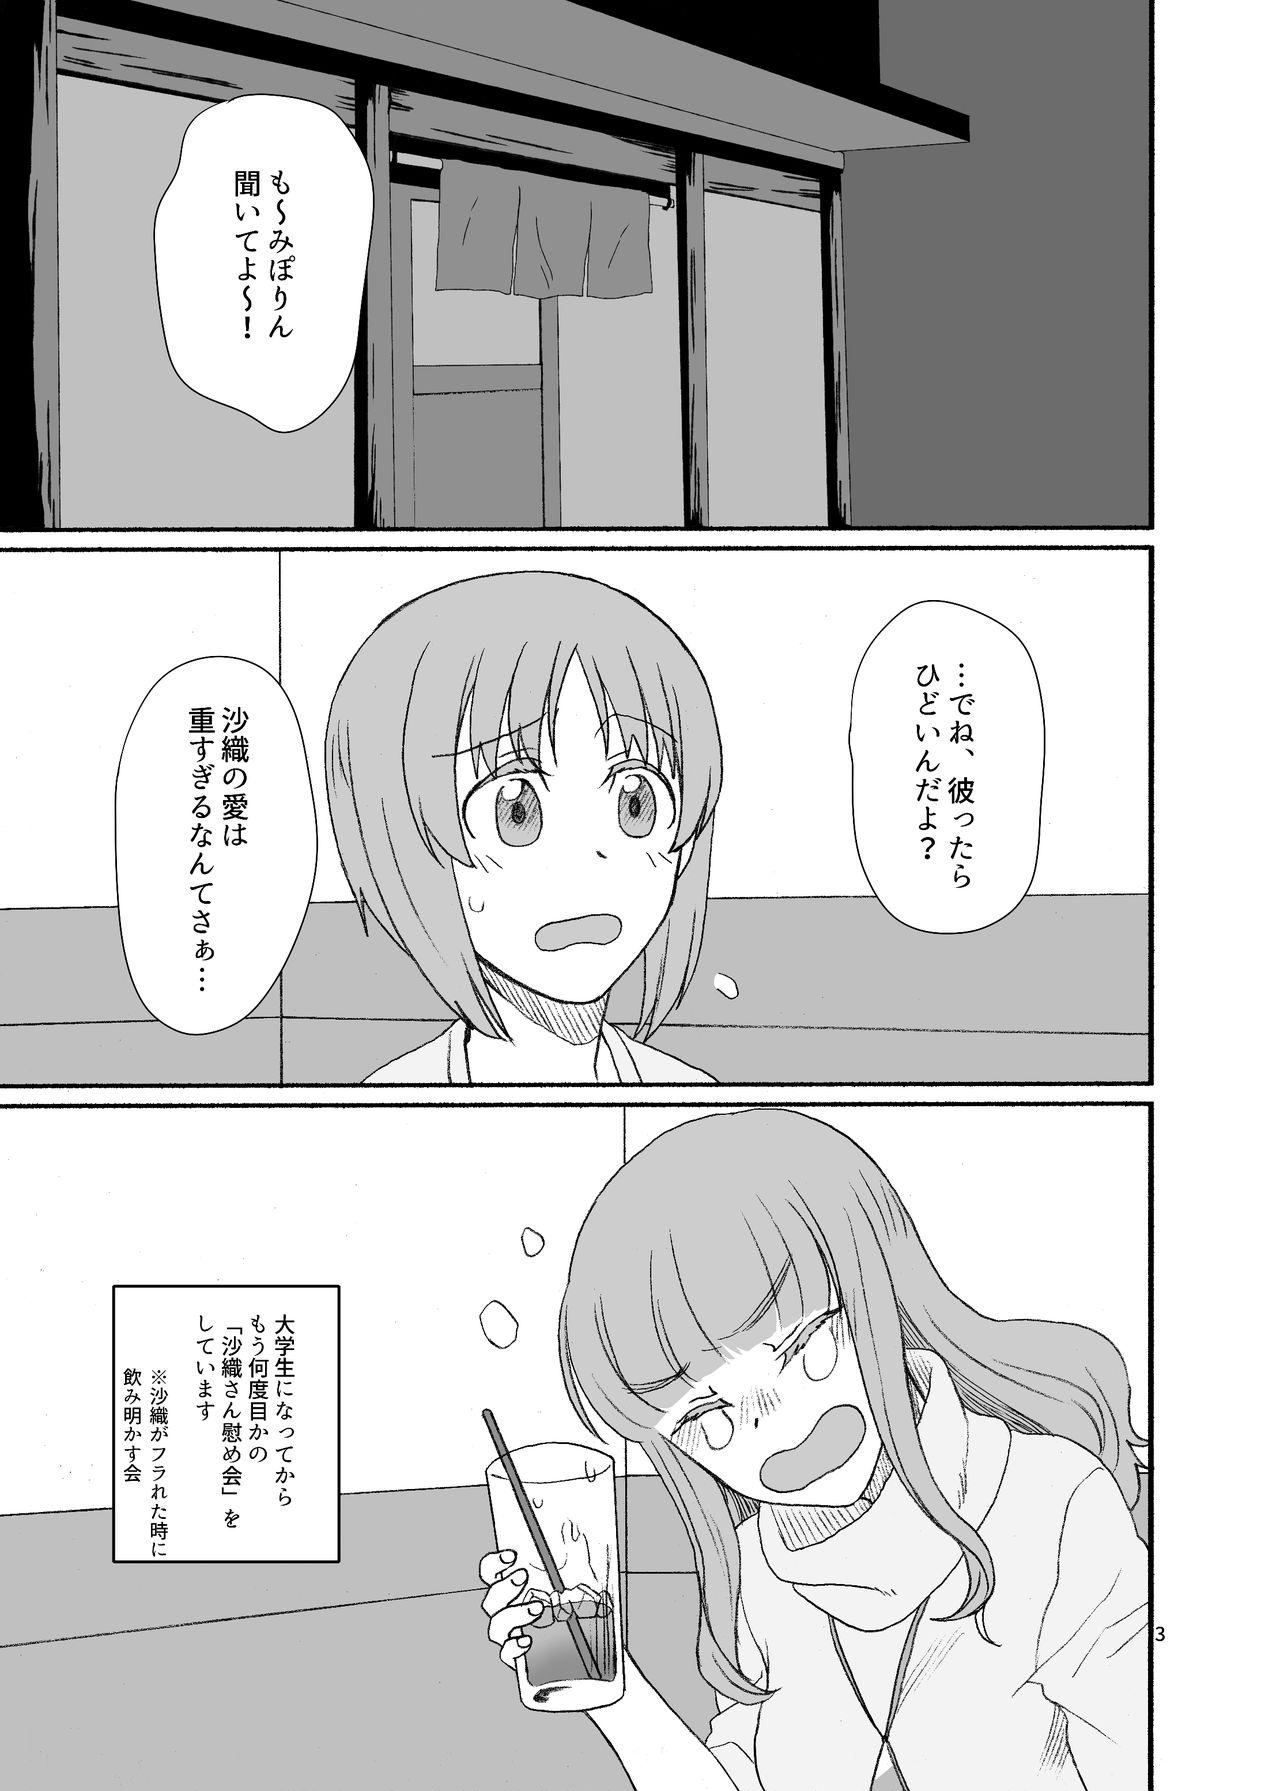 Fantasy Saori-san, Tsukiatte Kudasai! - Girls und panzer Fantasy - Page 2